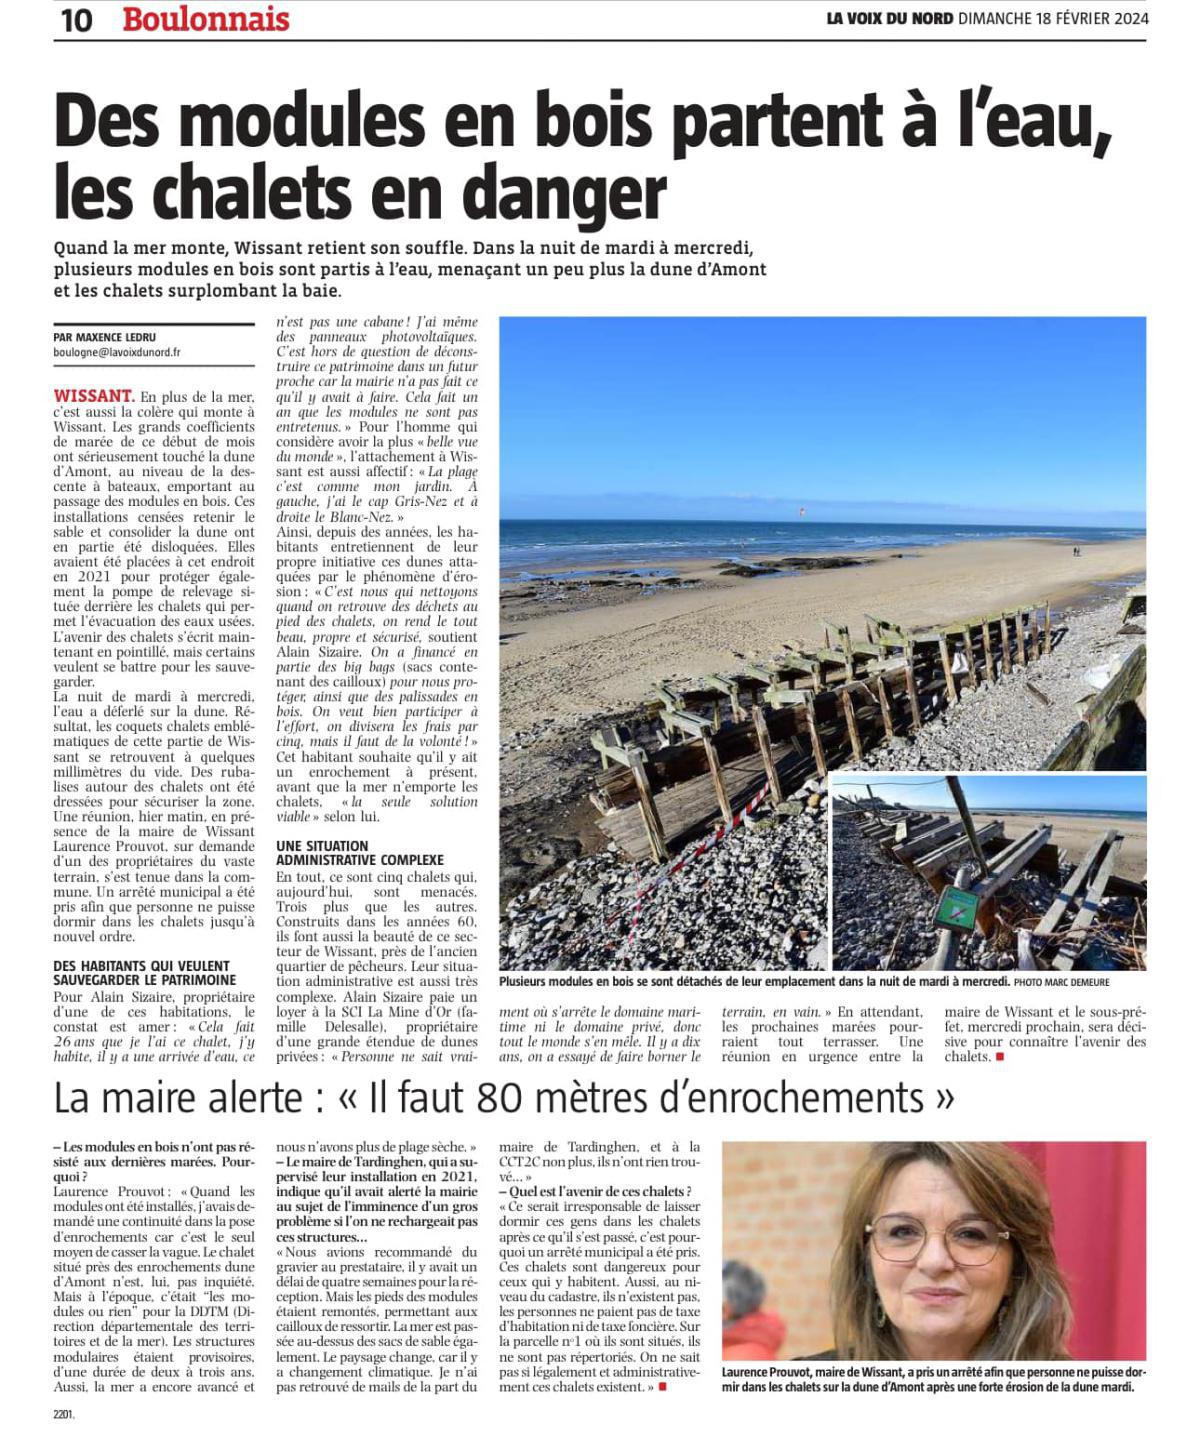 Chalets en danger à Wissant, la maire alerte : « Il faut 80 mètres d’enrochements »